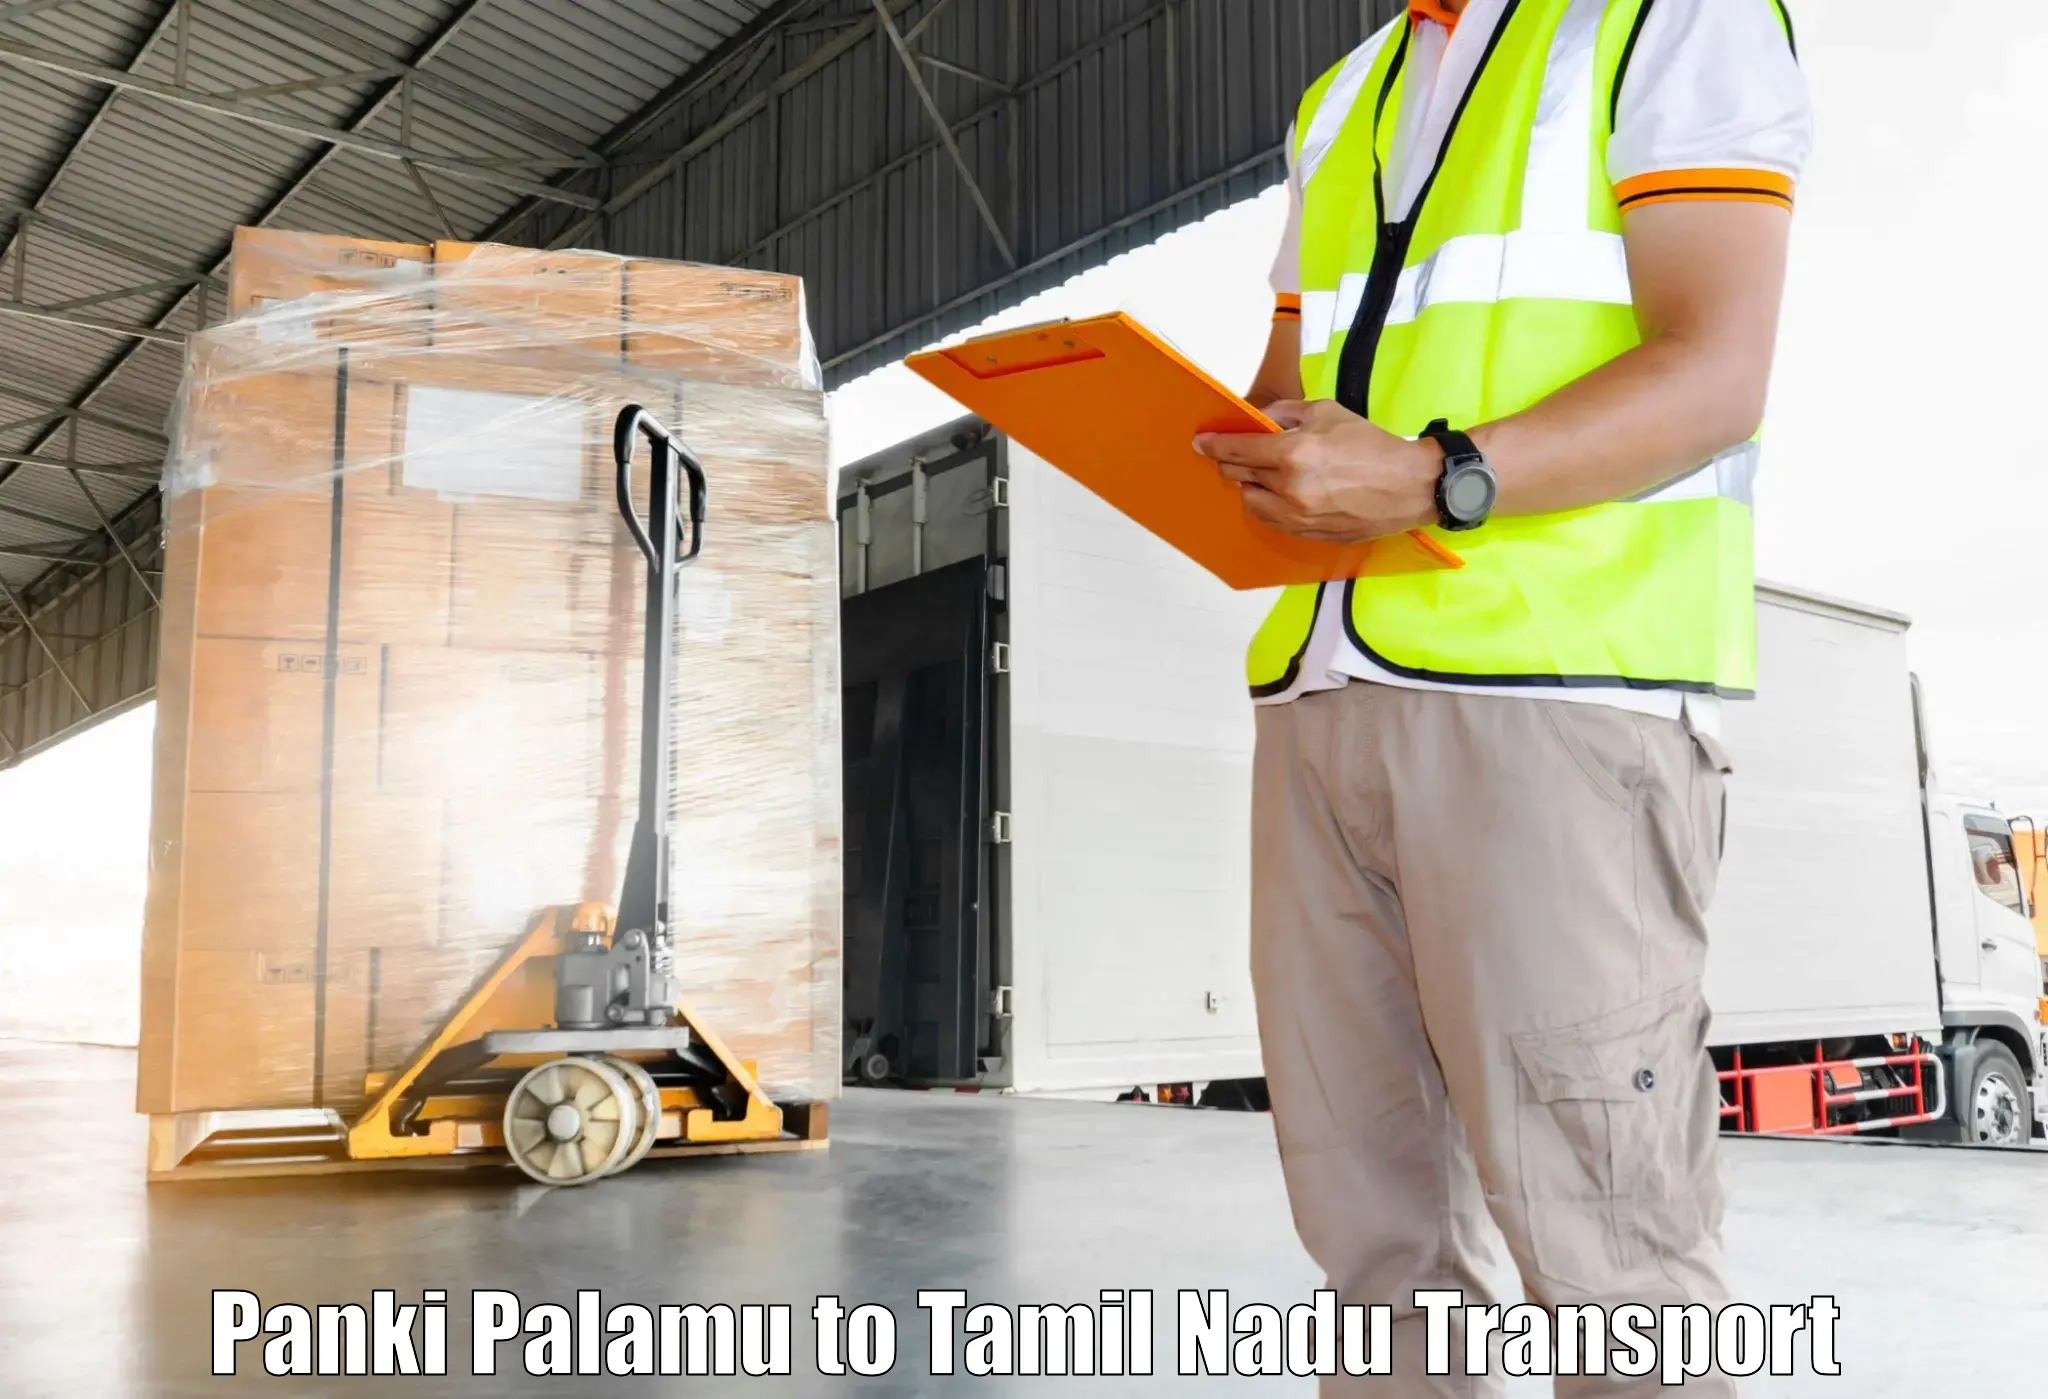 Transportation services Panki Palamu to Perunali